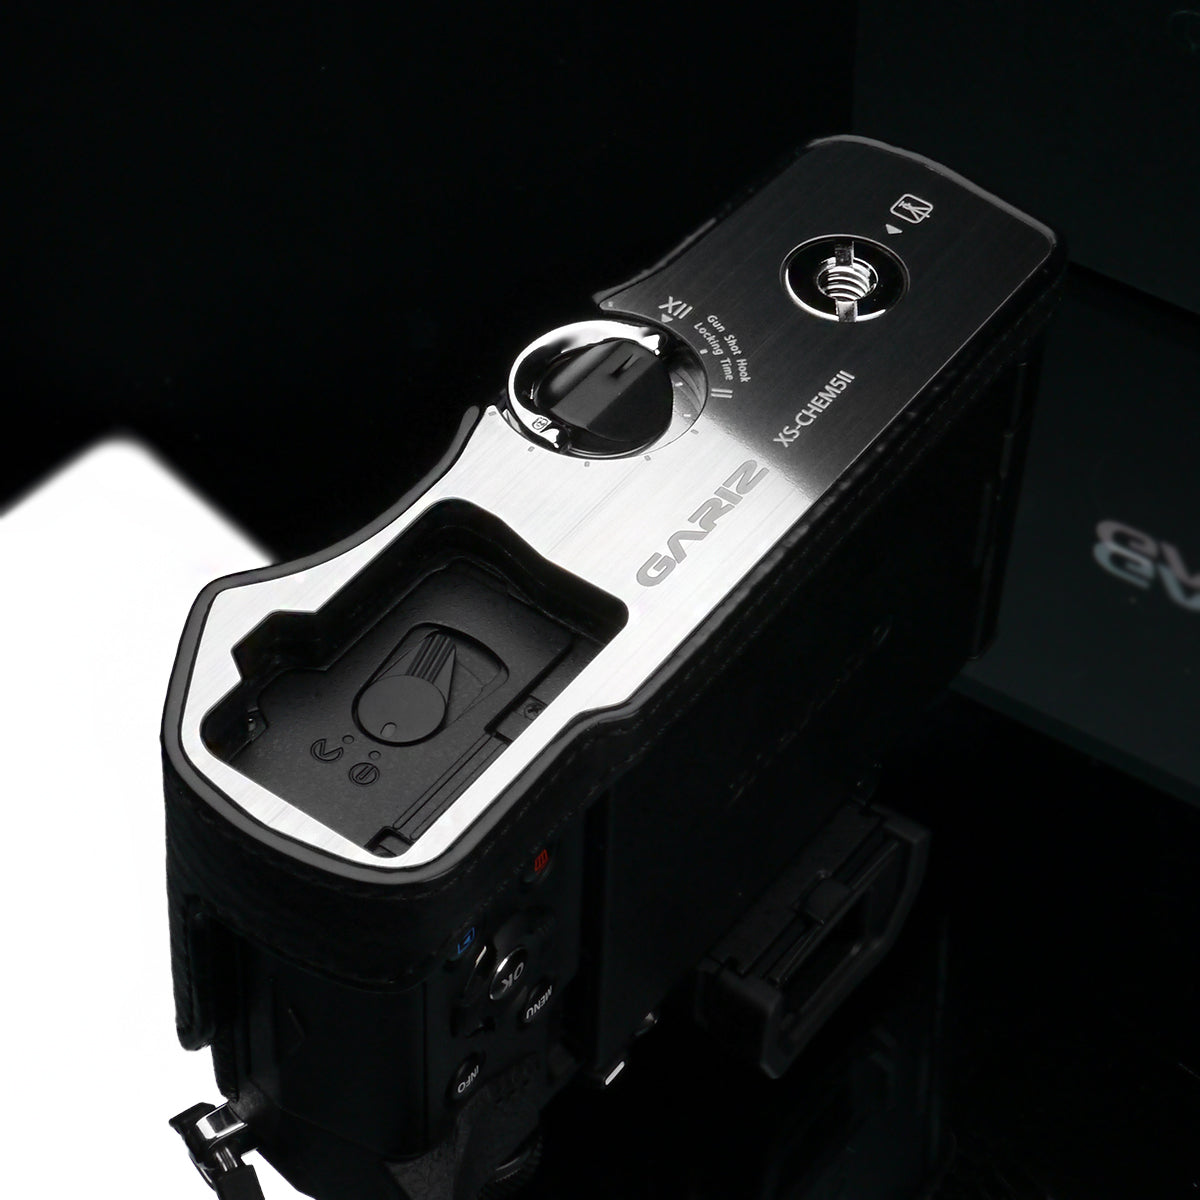 (DISCONTINUED) Gariz XS-EM5IIABK Camera Half Case Black for Olympus E-M5II Mark II